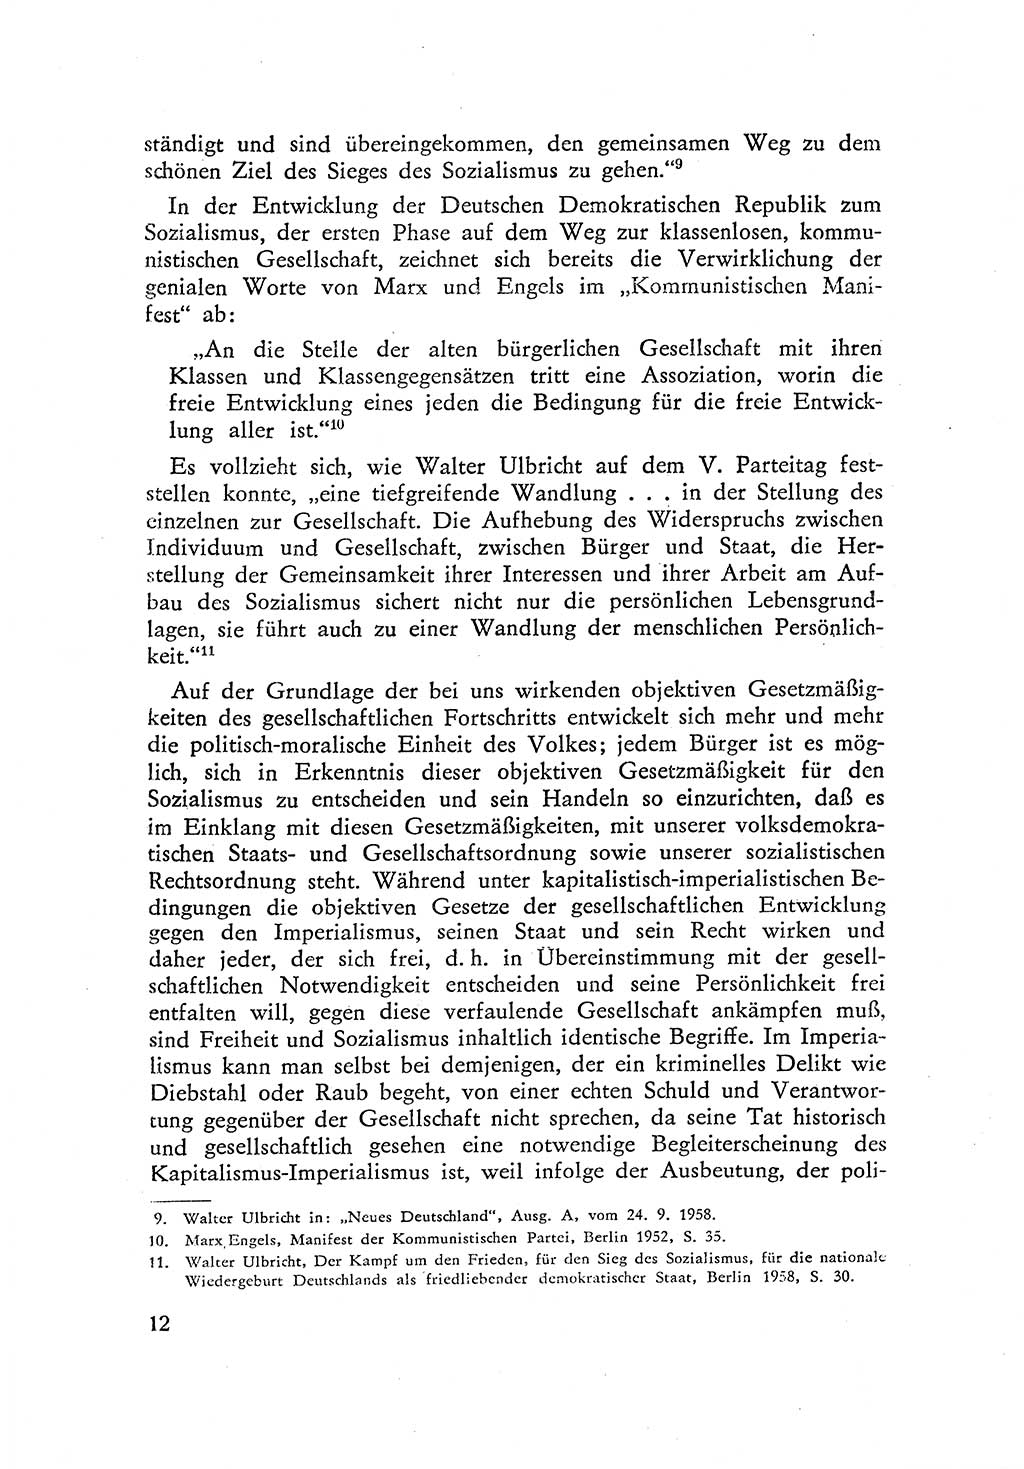 Beiträge zum Strafrecht [Deutsche Demokratische Republik (DDR)] 1959, Seite 12 (Beitr. Strafr. DDR 1959, S. 12)